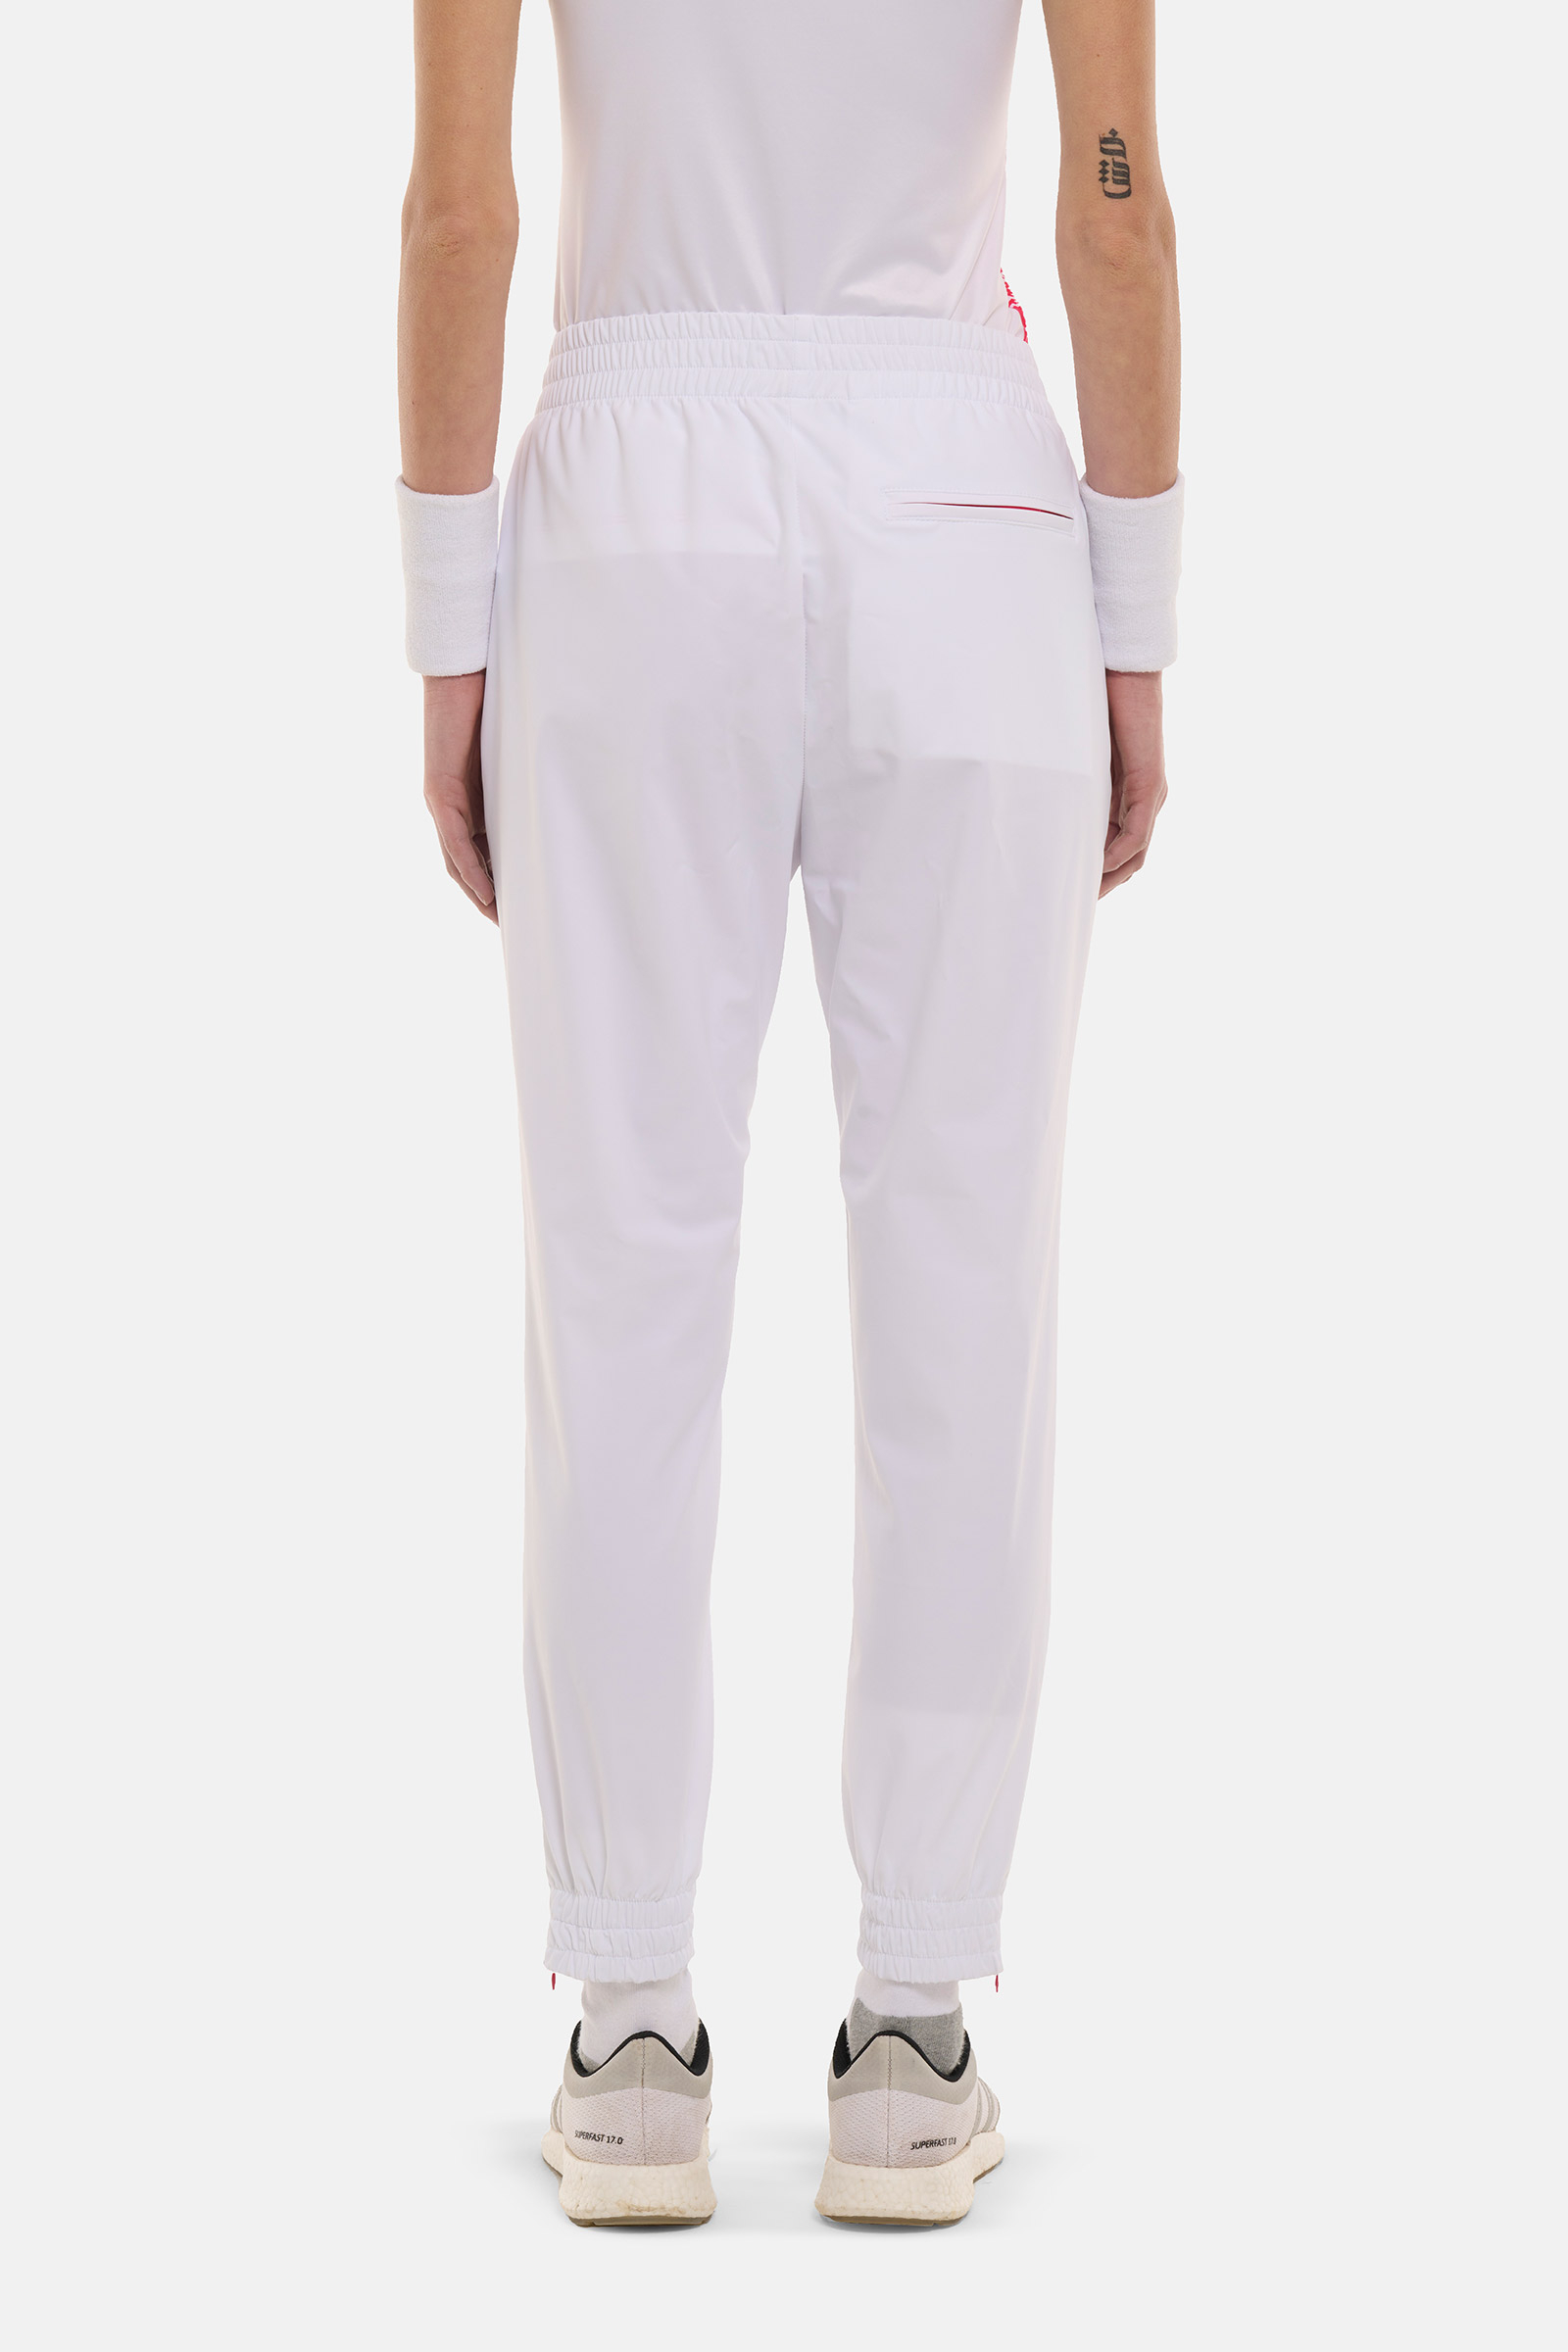 CRUMBLE TECH PANTS HEROES BY HYDROGEN - WHITE,FUCHSIA - Hydrogen - Luxury Sportwear